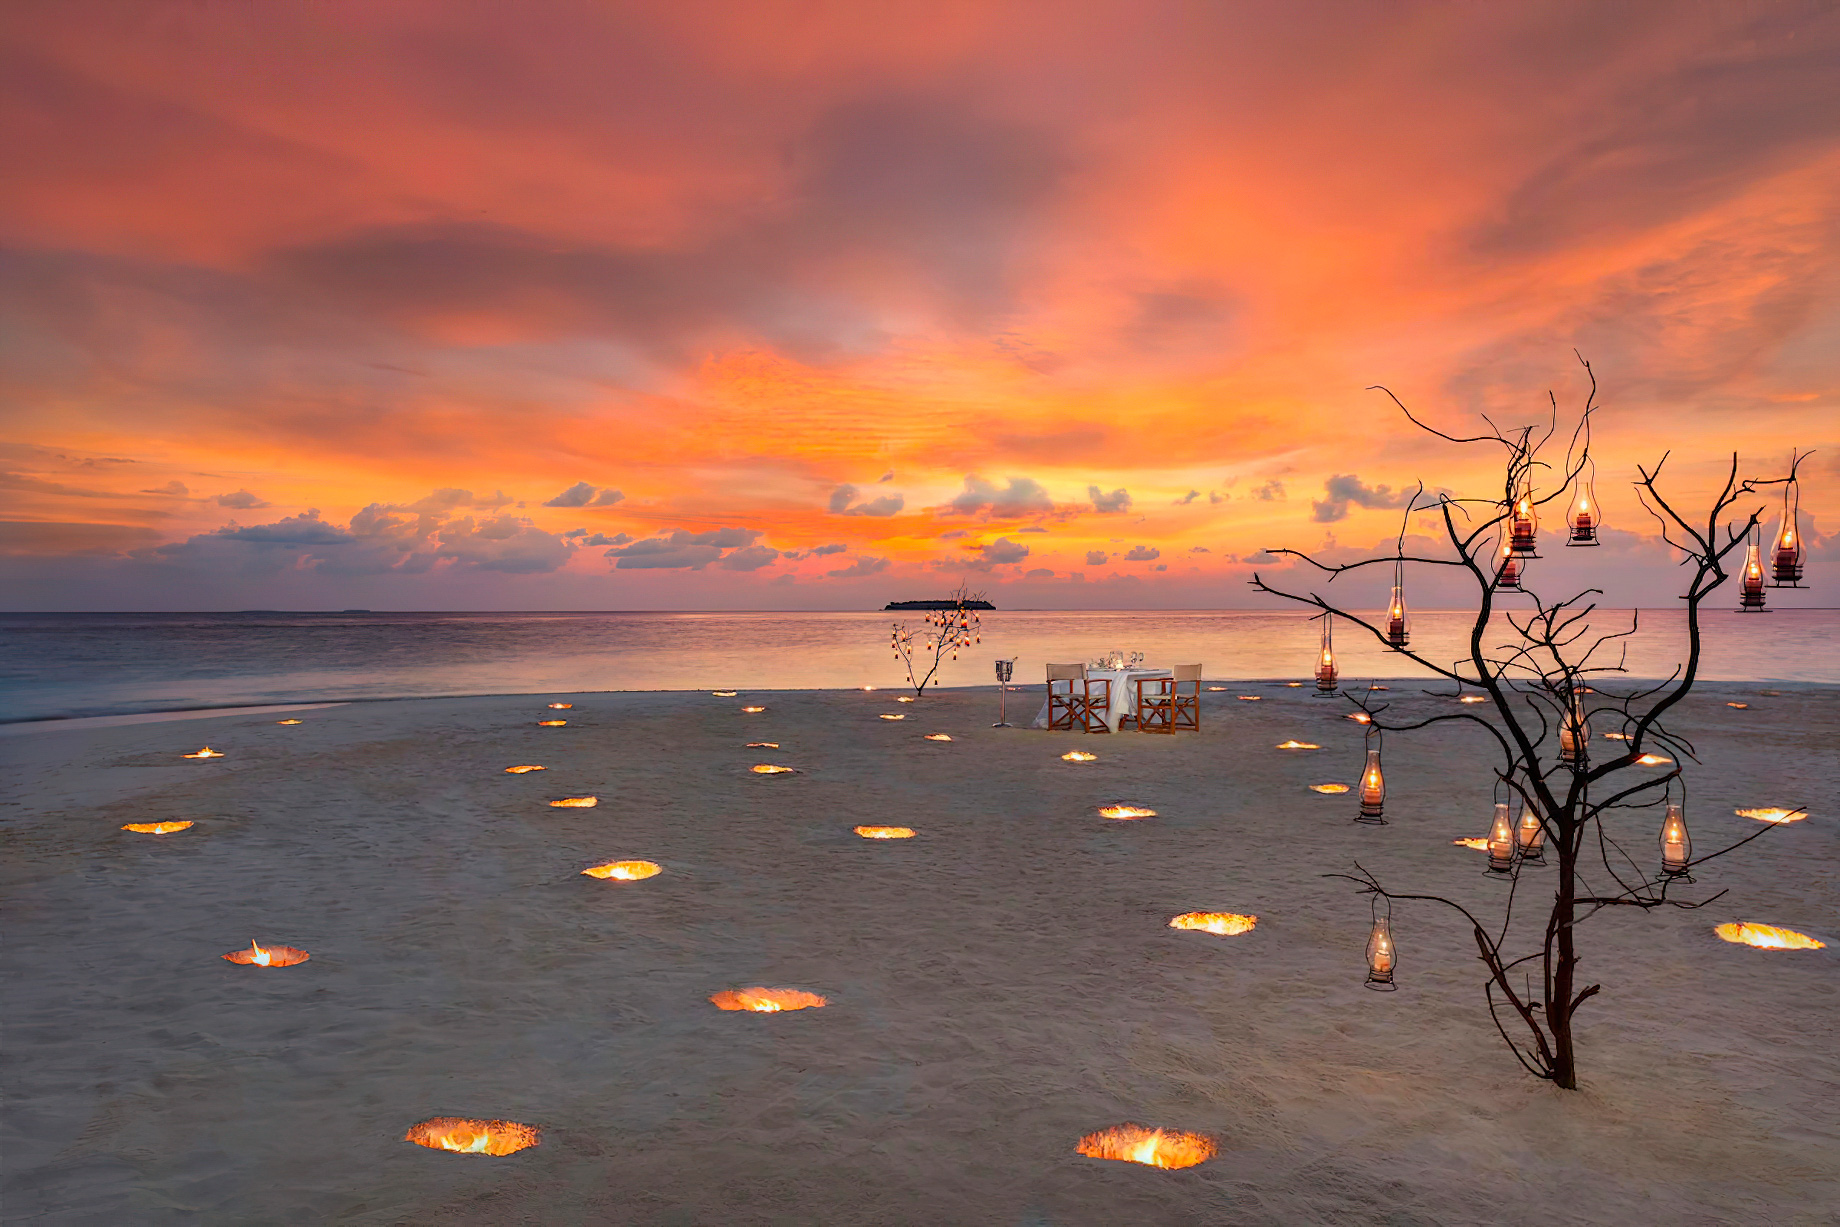 Anantara Kihavah Maldives Villas Resort – Baa Atoll, Maldives – Beach Dining Sunset